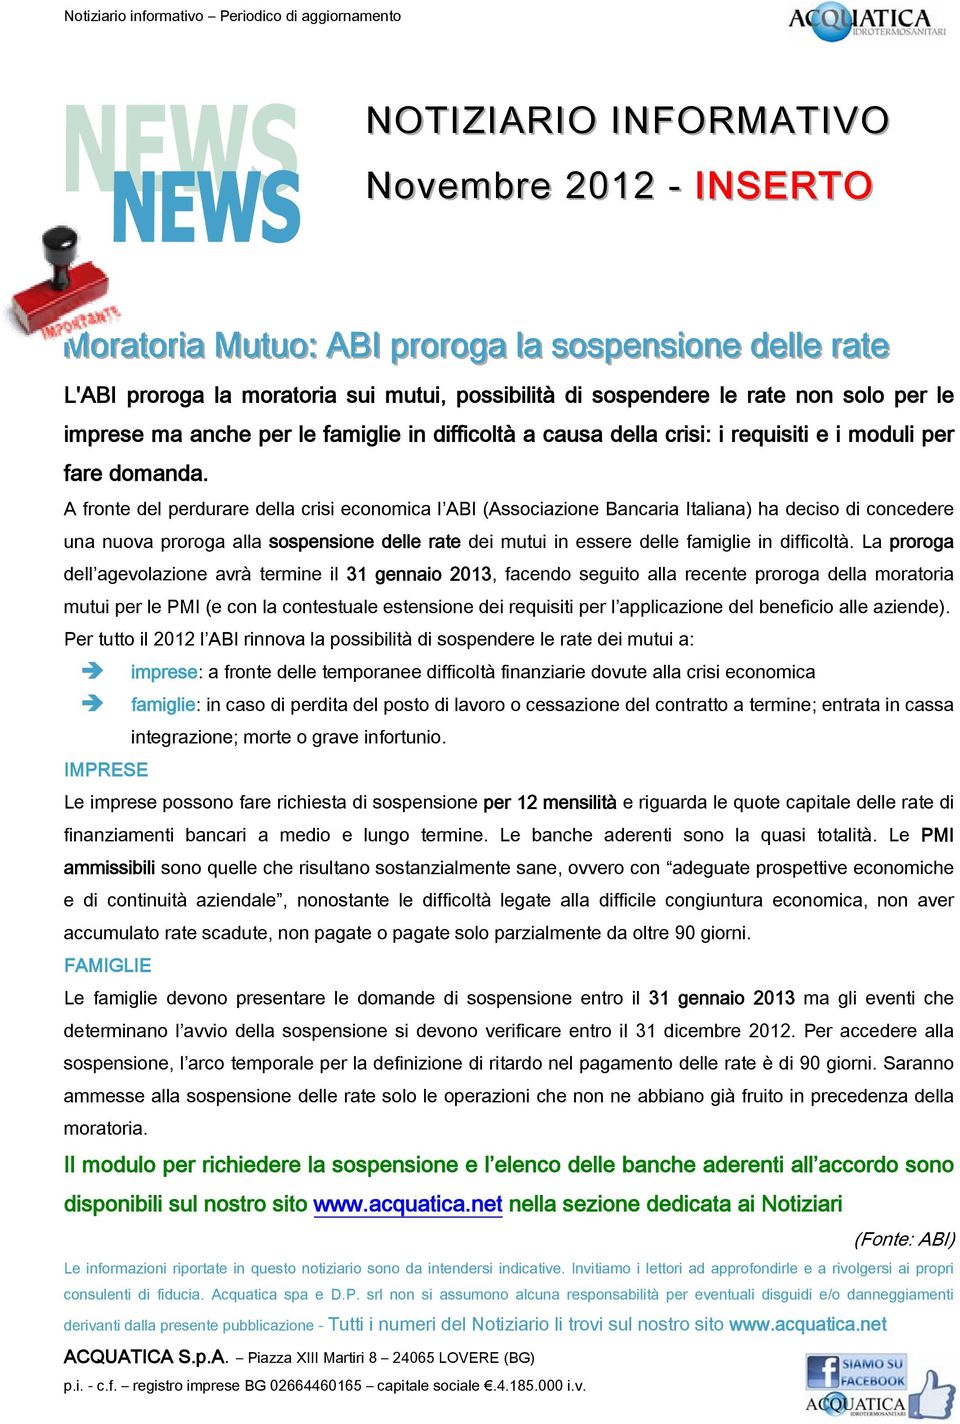 A fronte del perdurare della crisi economica l ABI (Associazione Bancaria Italiana) ha deciso di concedere una nuova proroga alla sospensione delle rate dei mutui in essere delle famiglie in